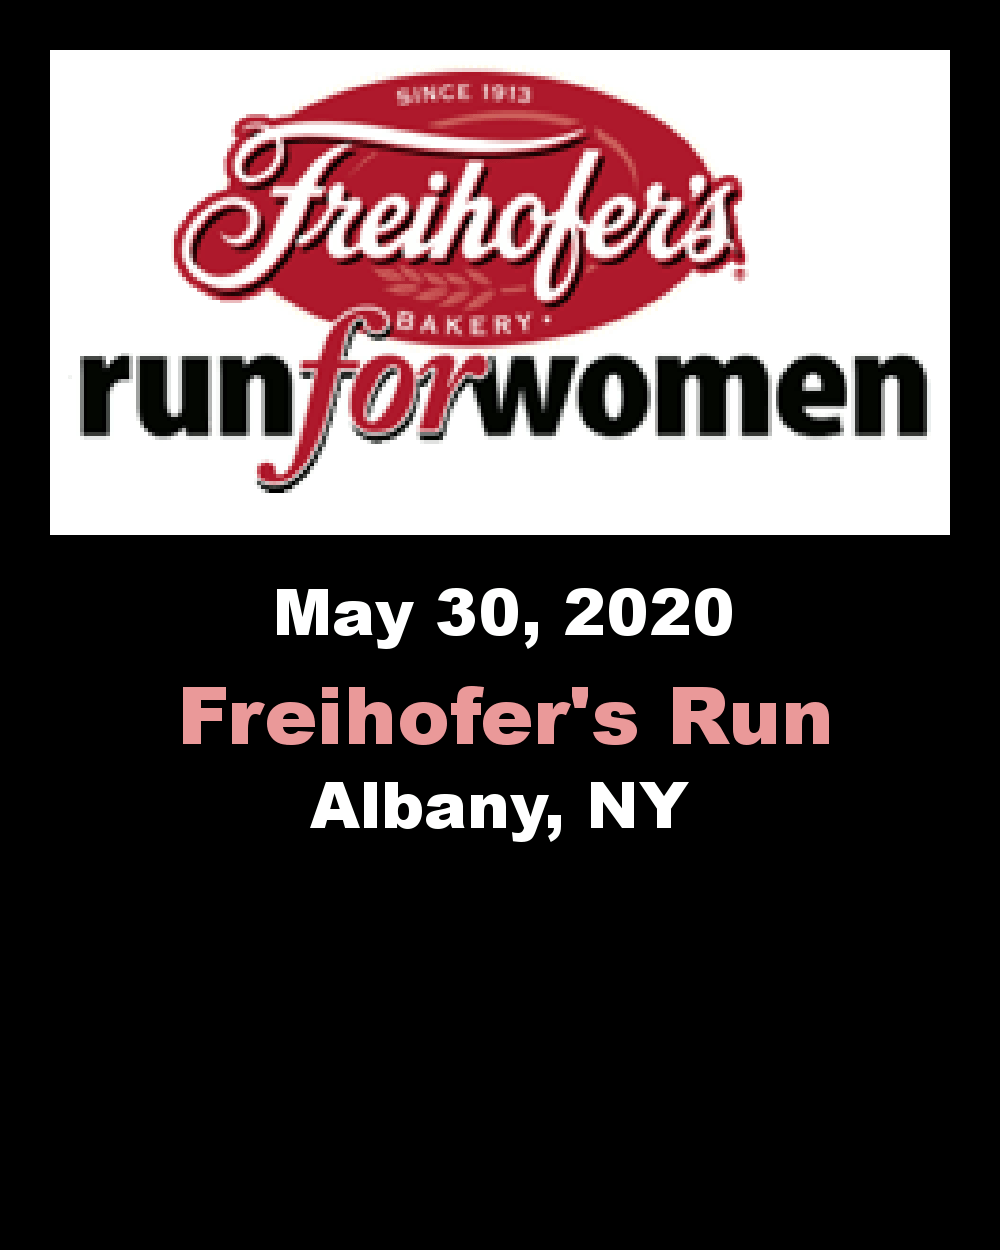 Freihofer's Logo - Freihofer's Run For Women - Albany, NY - 5/30/2020 - My BEST Runs ...